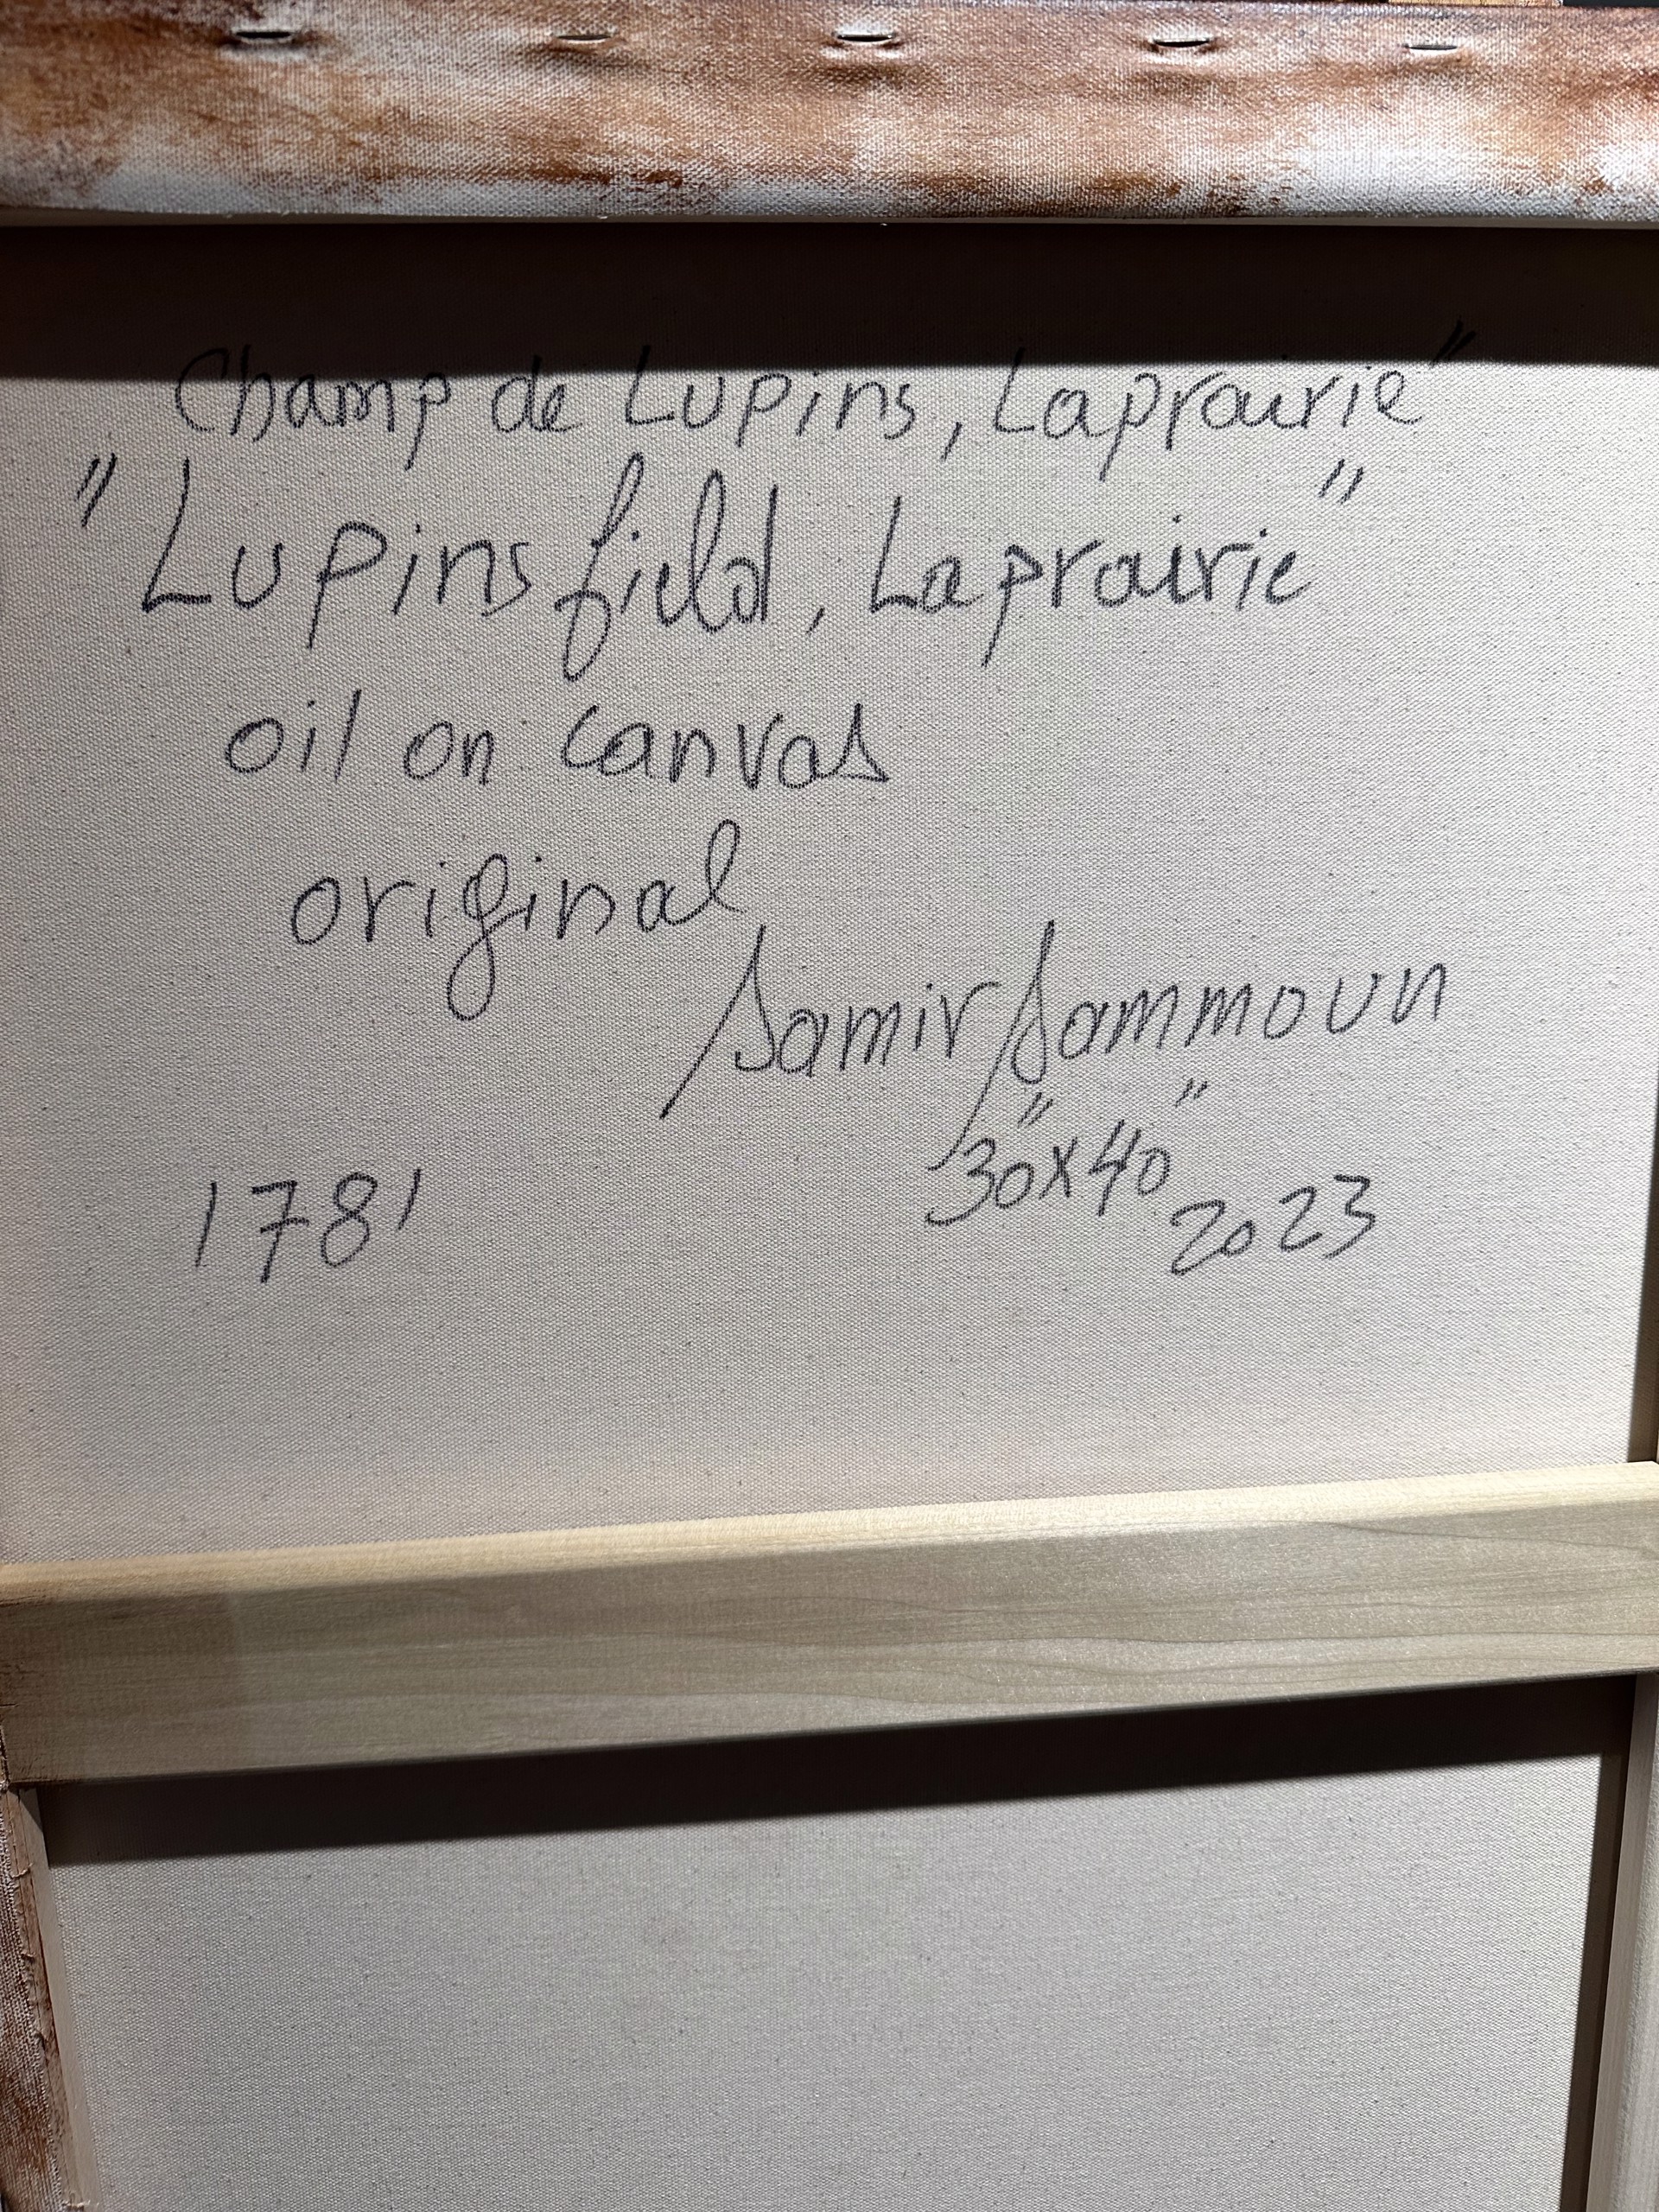 Champ de lupins, Laprairie, Lupins field, Laprairie by Samir Sammoun